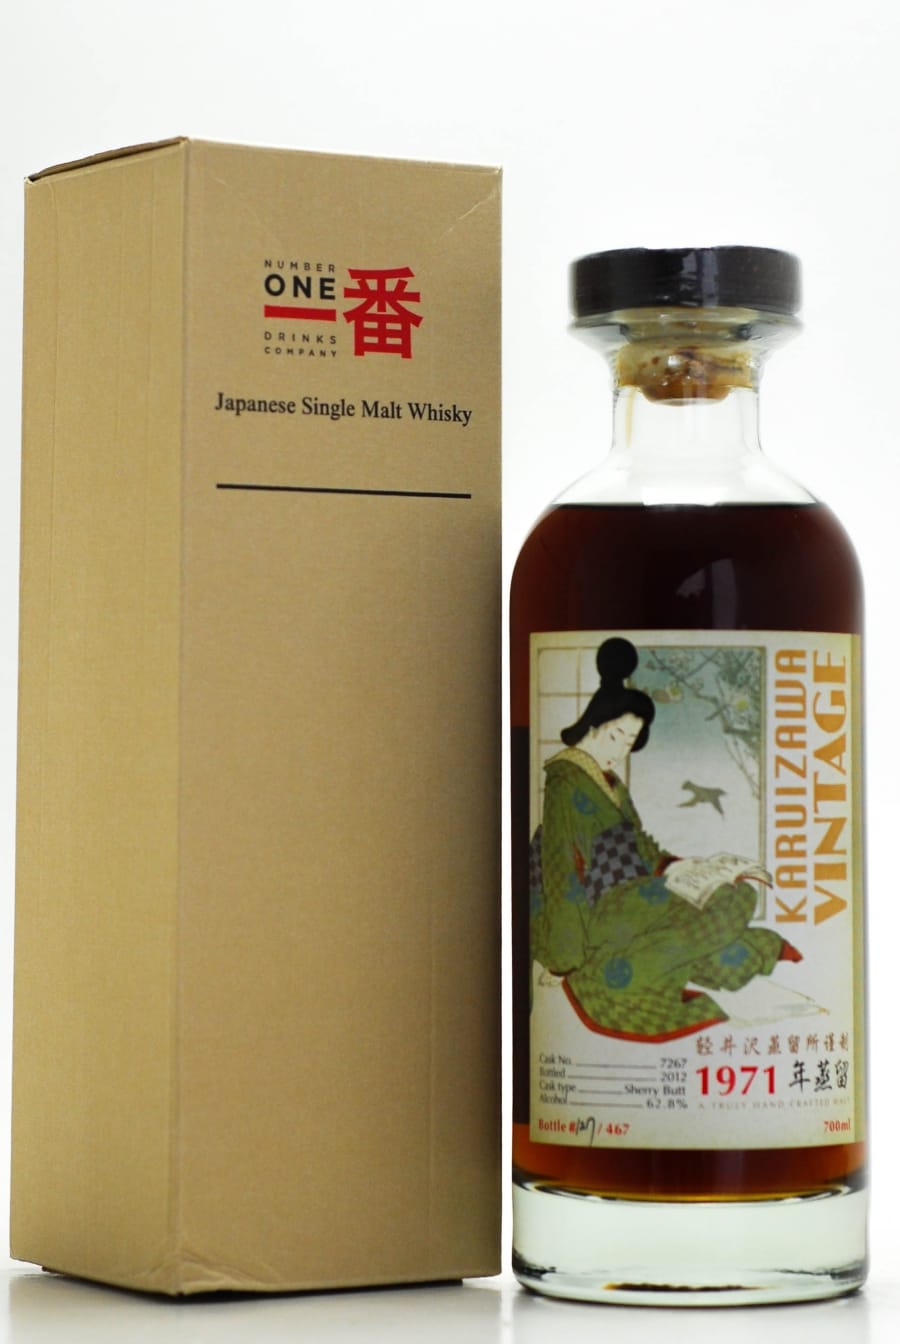 Karuizawa - Karuizawa 1971 Geisha labels Botteling Serie Cask: 7267 For Taiwan 1 Of 467 Bottles 62.8% 1971